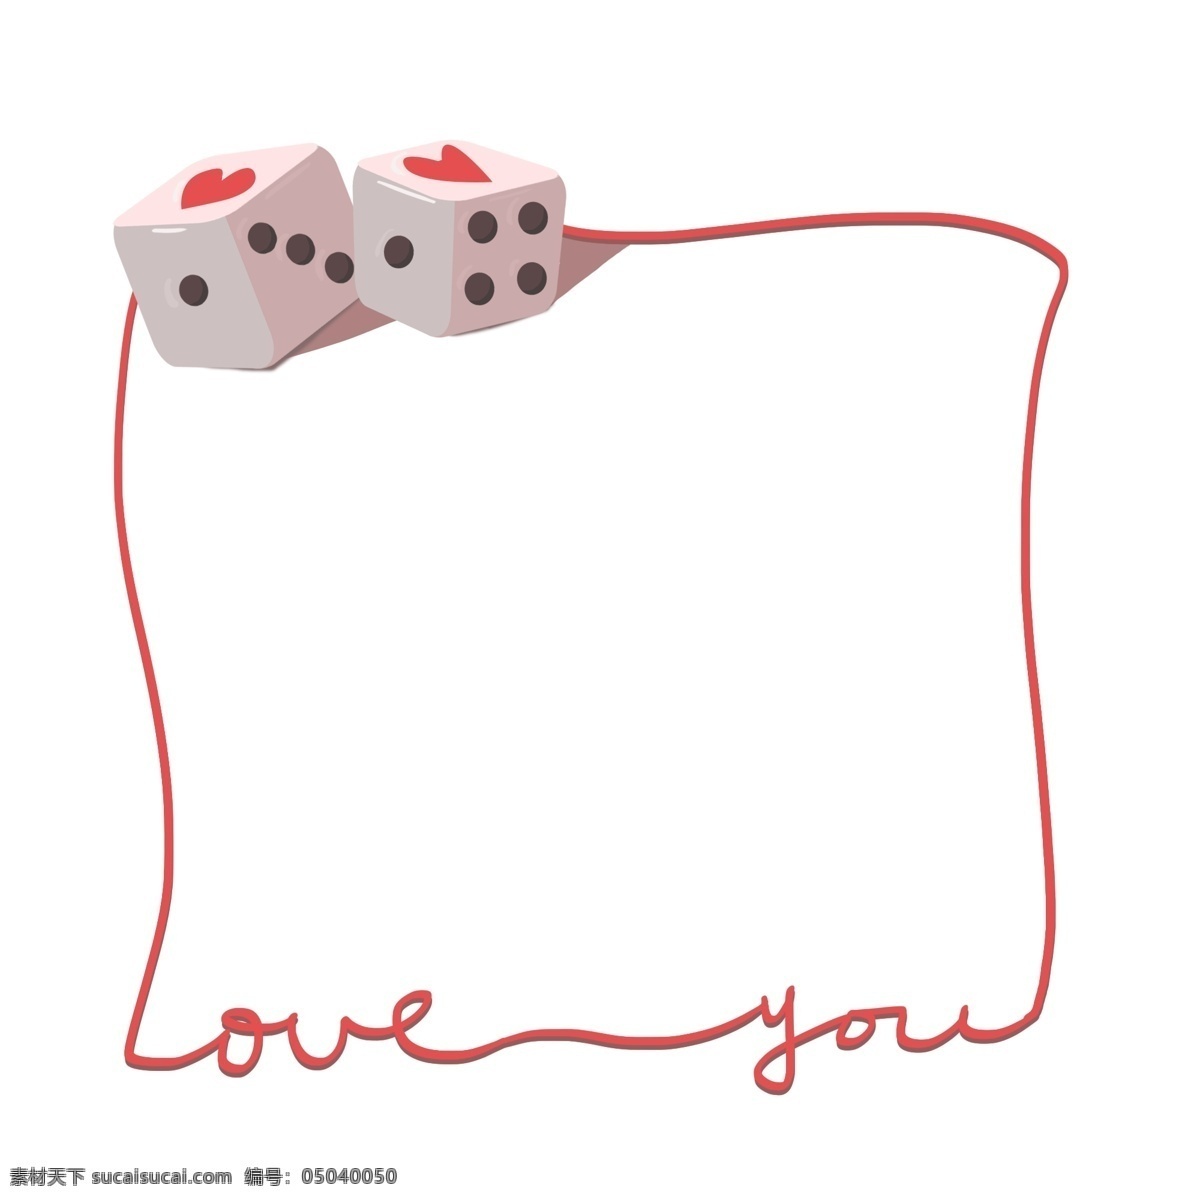 爱心 色子 边框 插画 爱情 情人节边框 爱心色子 色子边框插画 红色爱心 红色边框 红色线框 白色色子